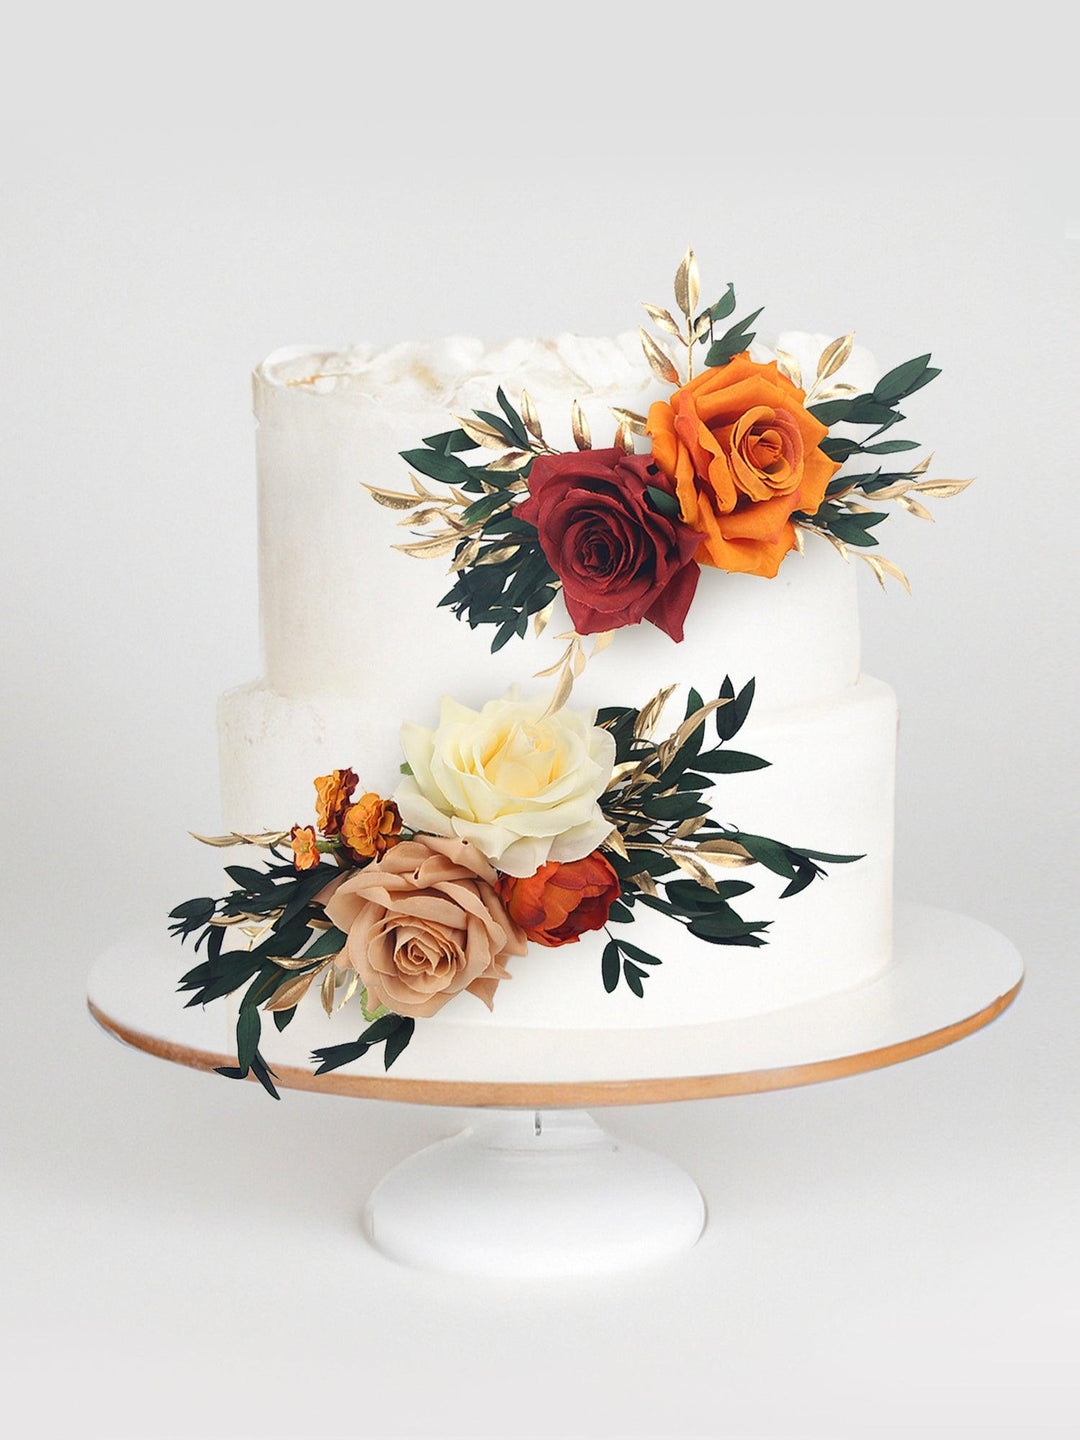 – Flower Decorations Cake cake decor Flower Rinlong topper wedding